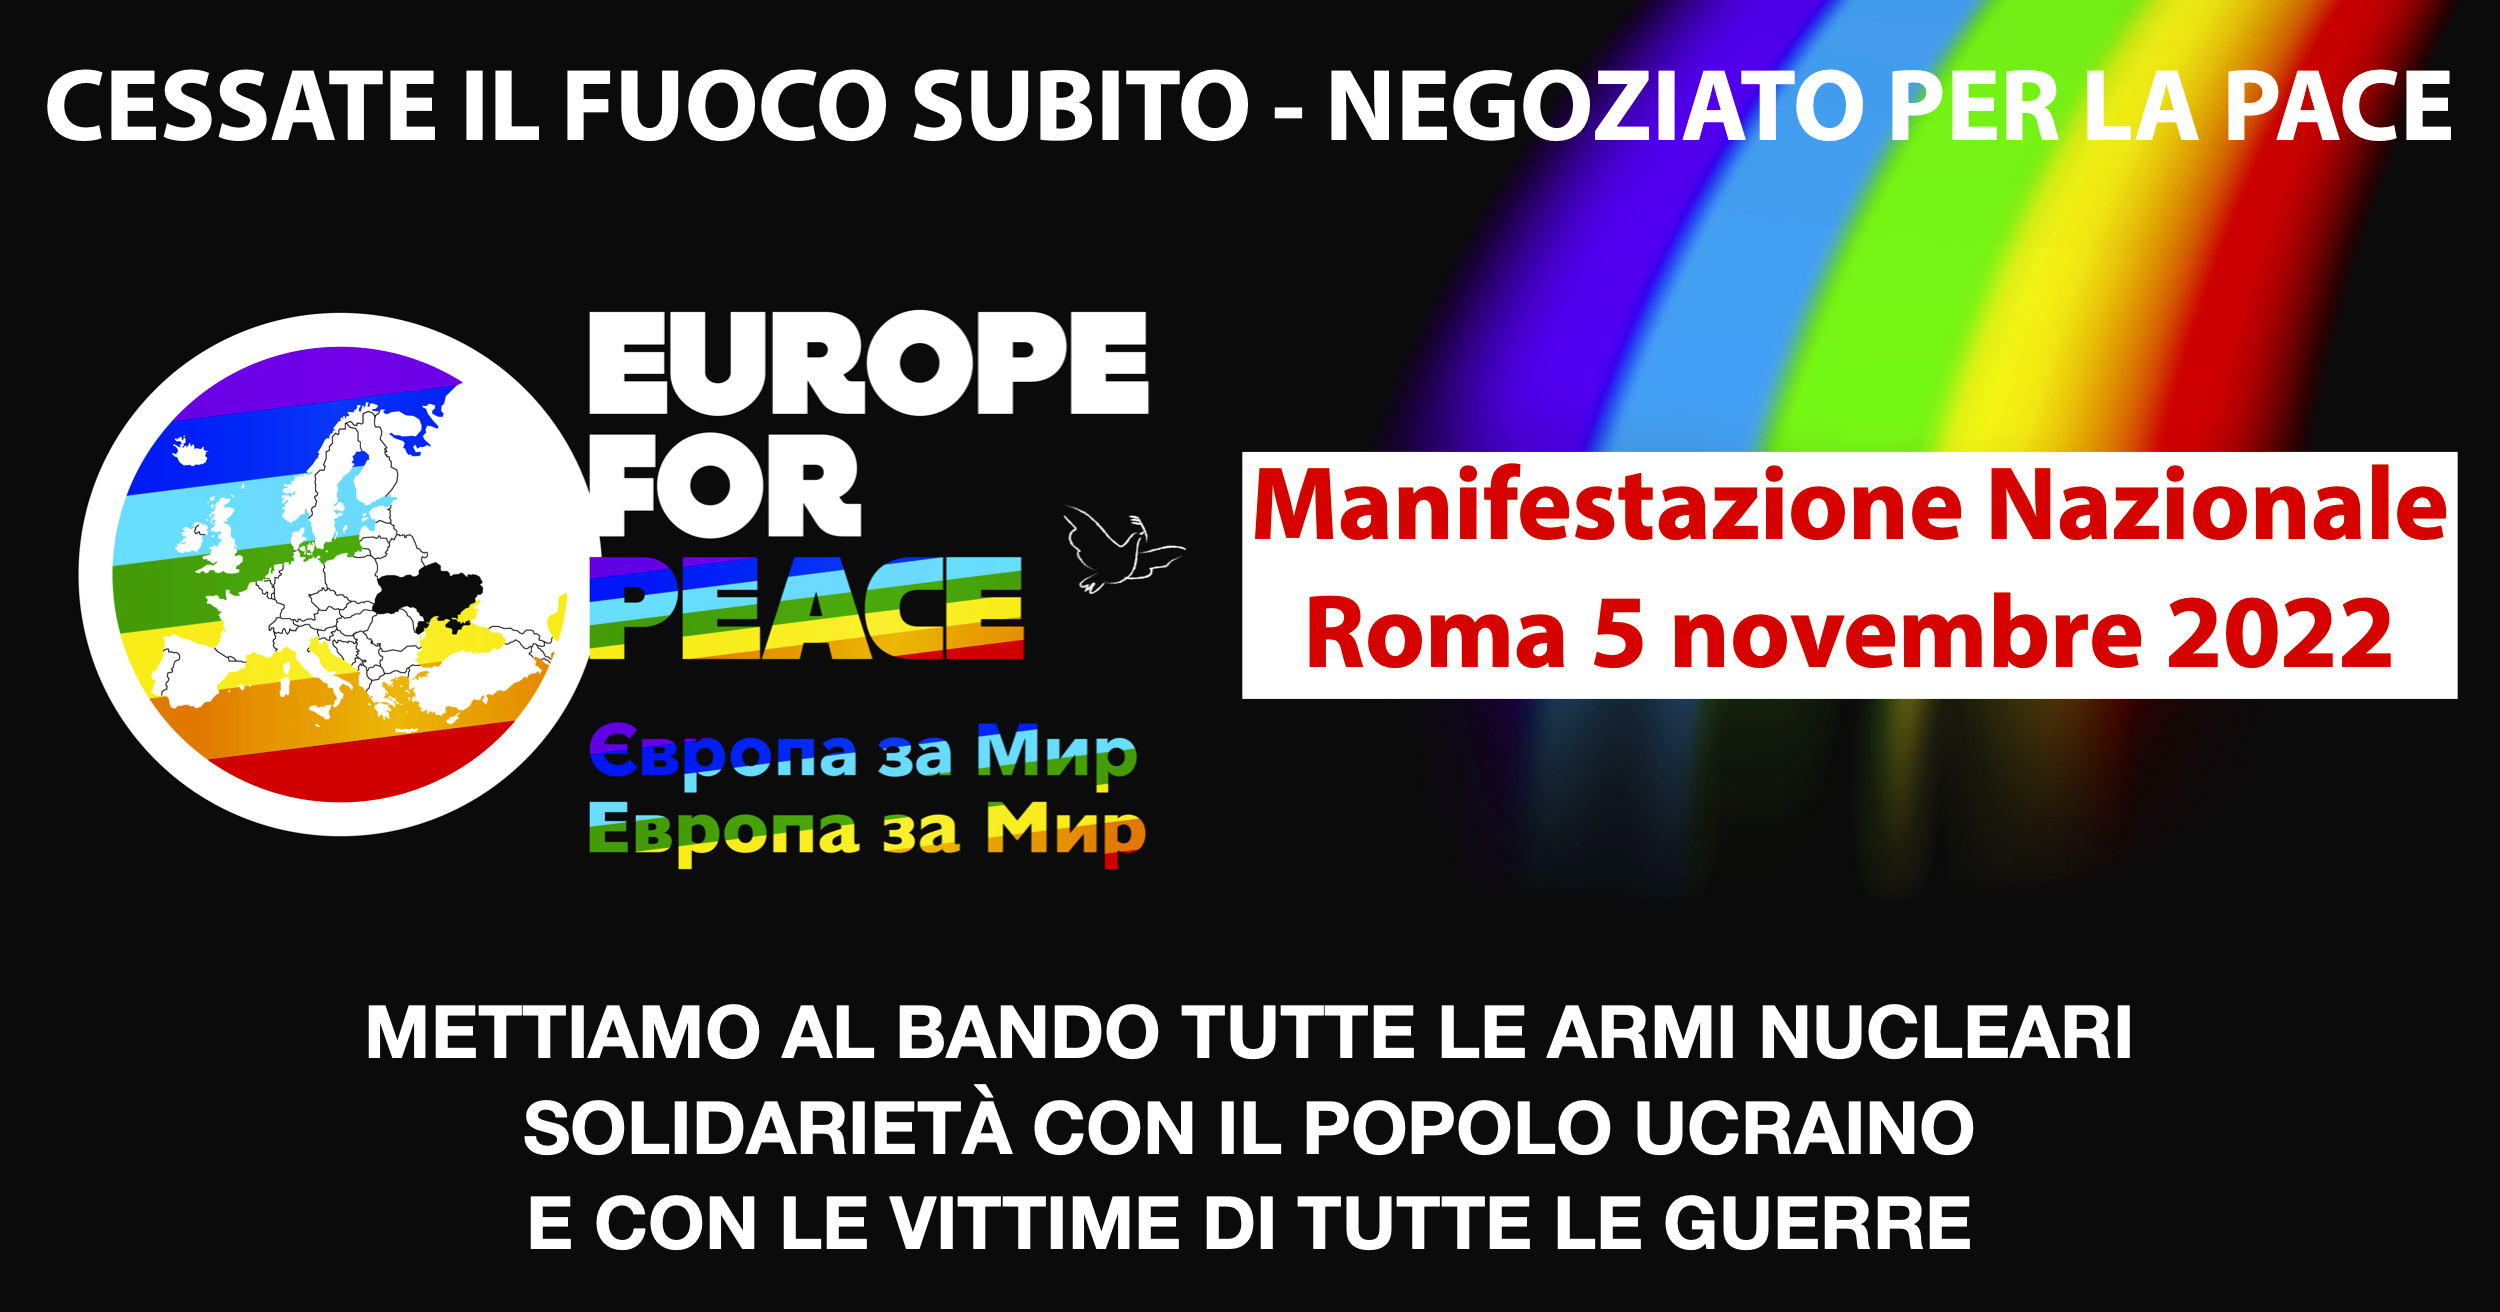 Europe-For-Peace-manifestazione-5-novembre-2022-ROMA-2